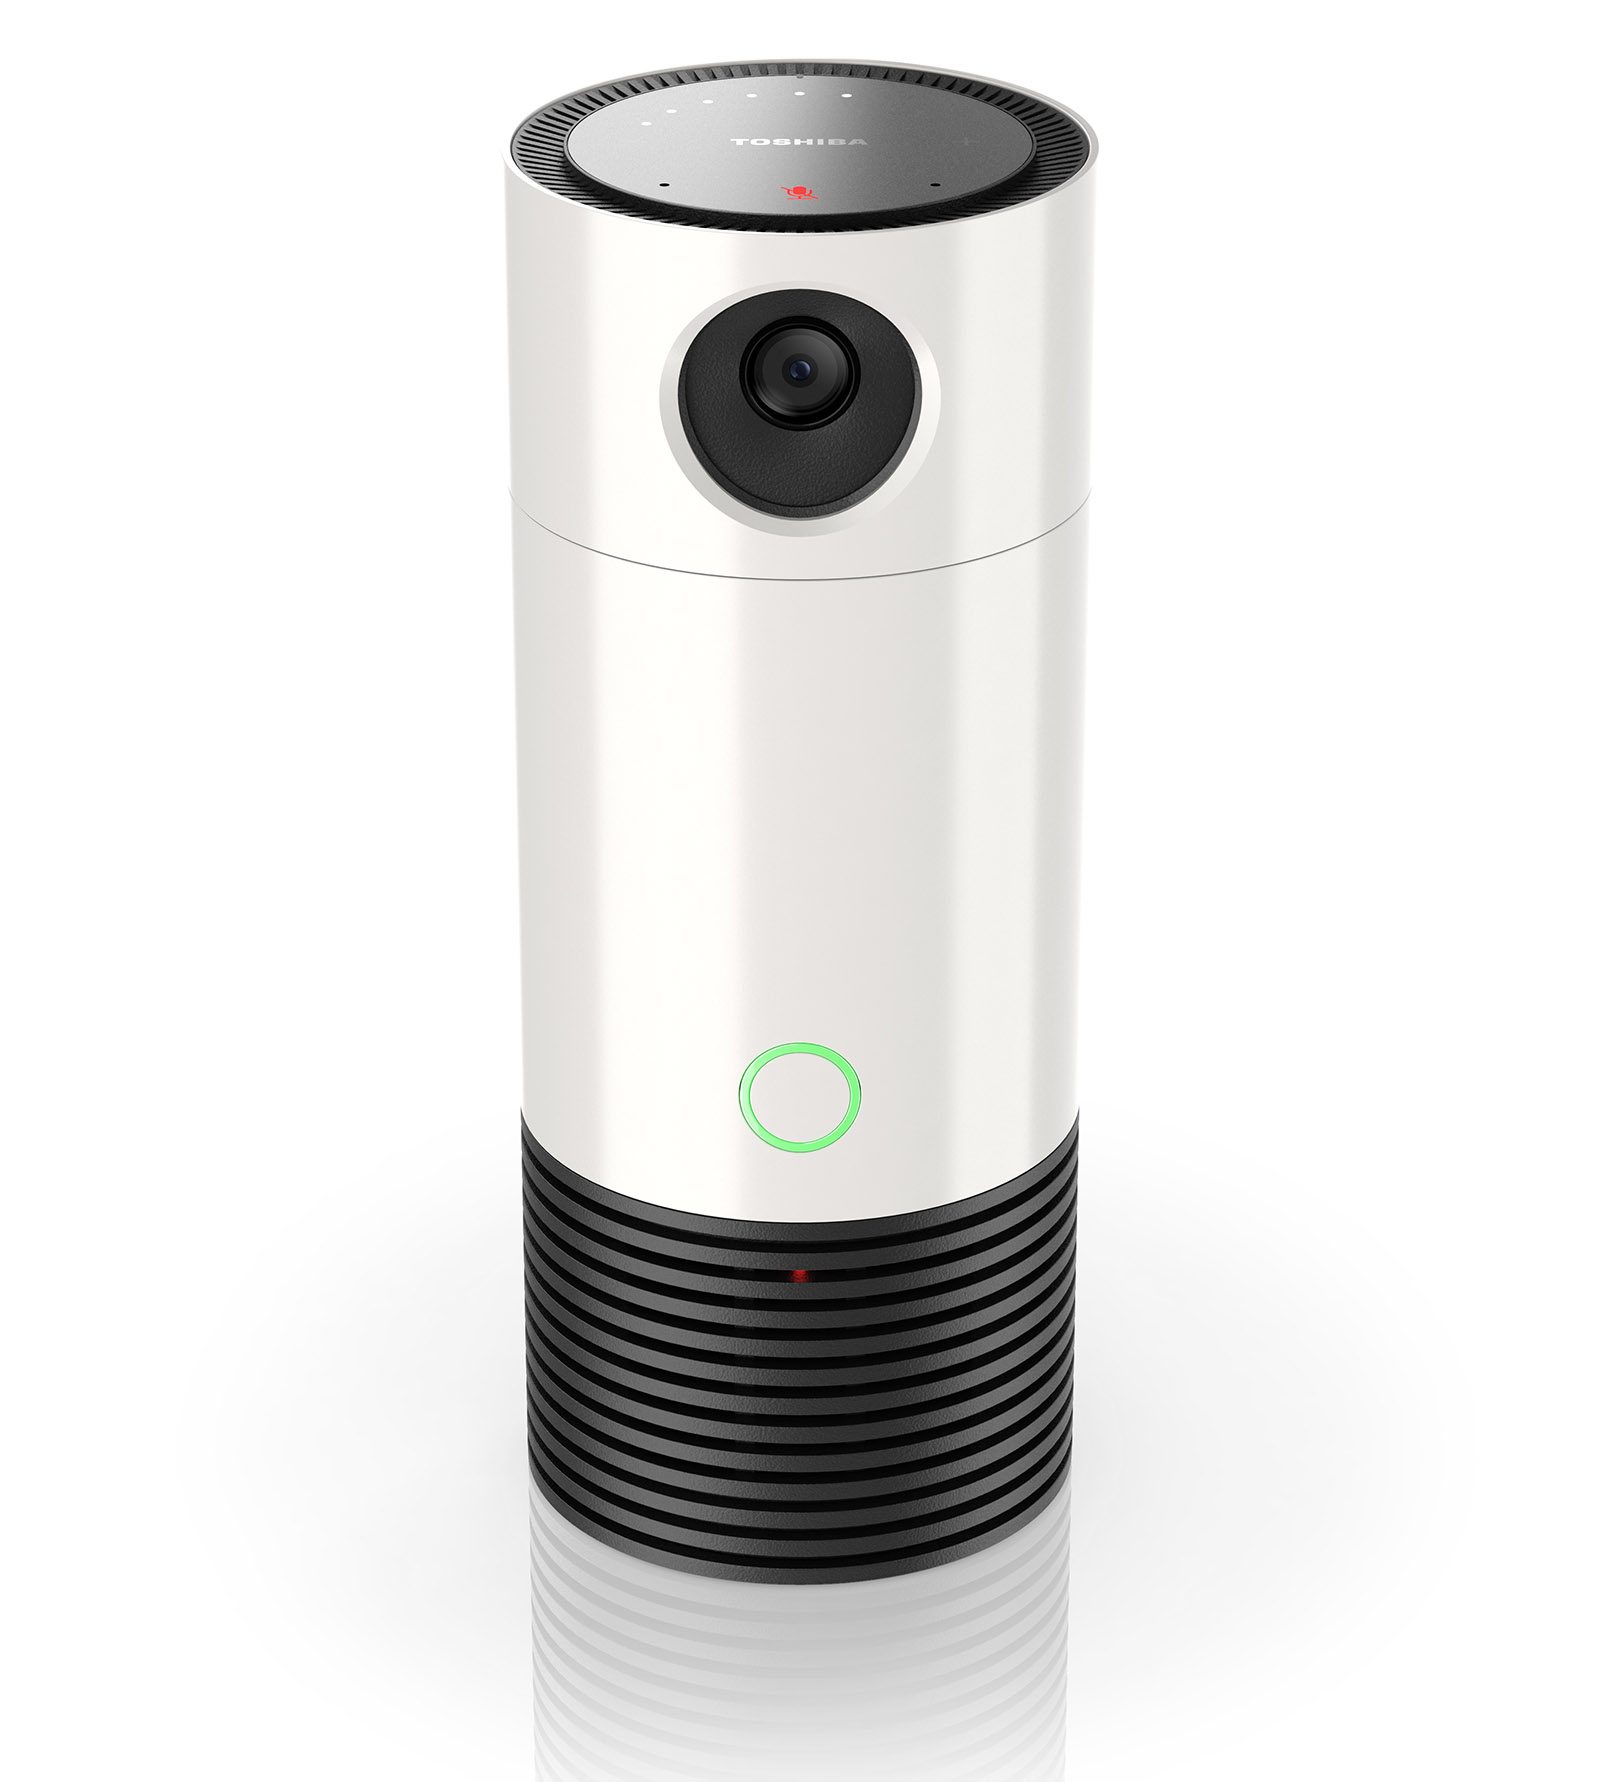 Set-top box Symbio mới của Toshiba sẽ tích hợp camera an ninh và trợ lý ảo Alexa